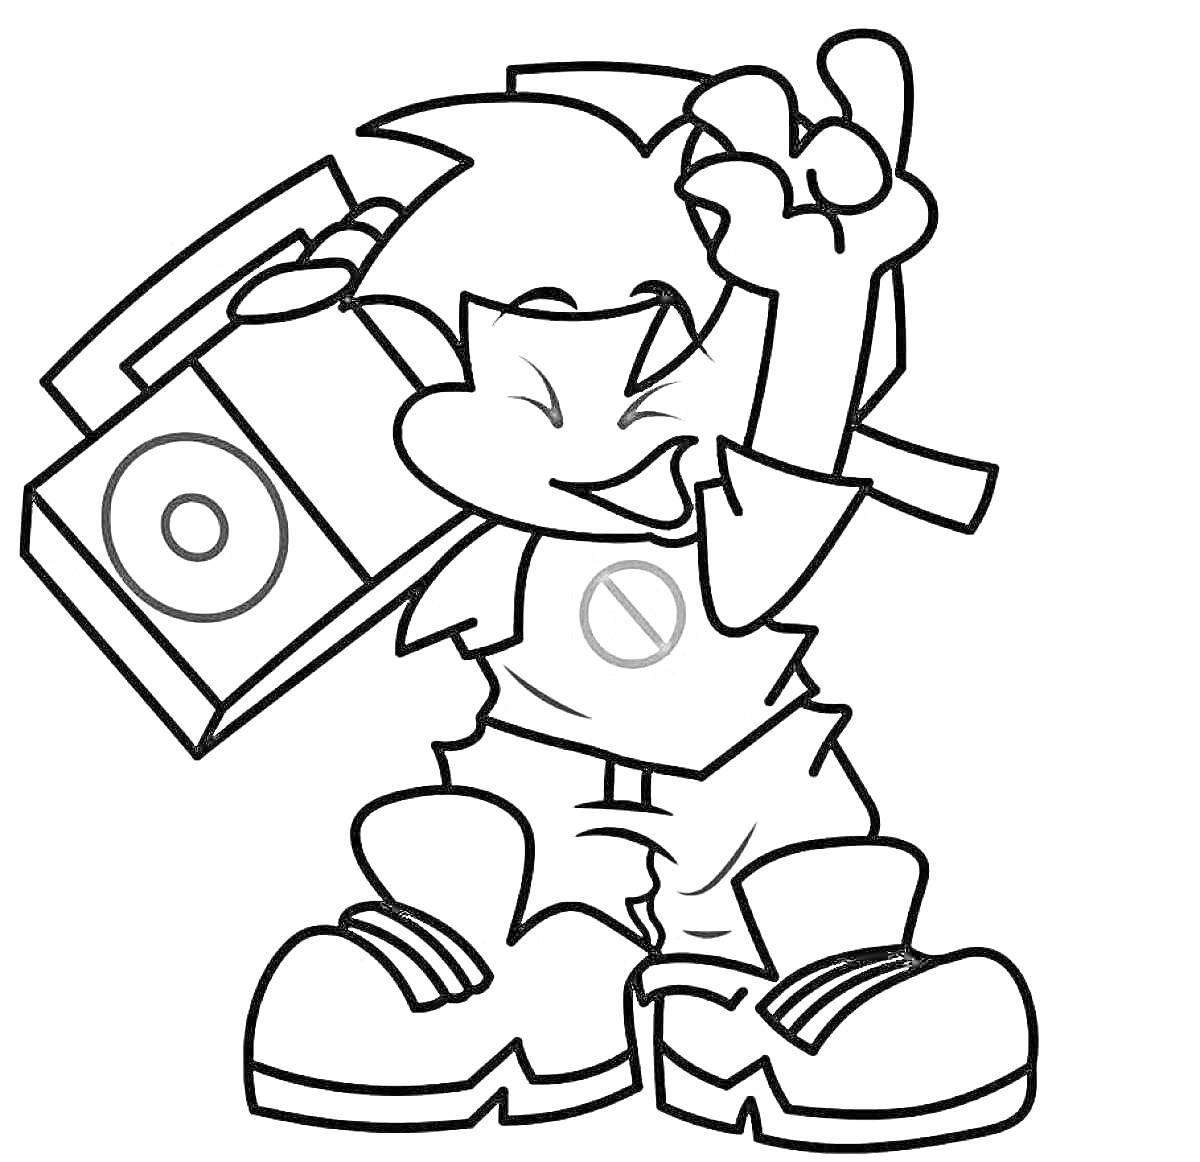 Раскраска Мальчик с прической, футболкой с эмблемой, шортами и большими кроссовками держит магнитофон и показывает знак победы